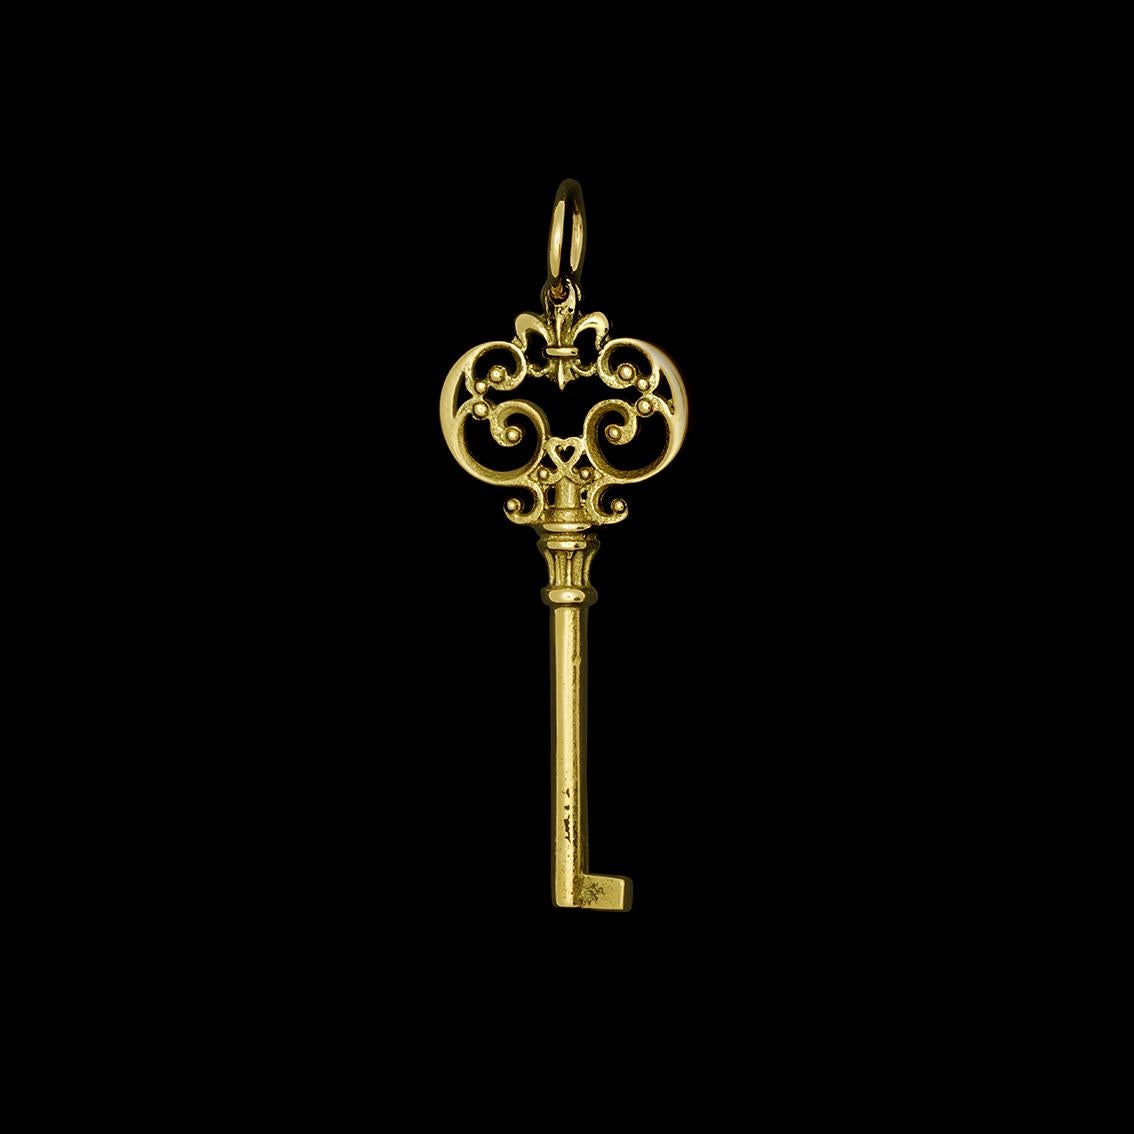 Art Nouveau 18k Yellow Gold Ornate Antique Style Key Charm Pendant Necklace (18